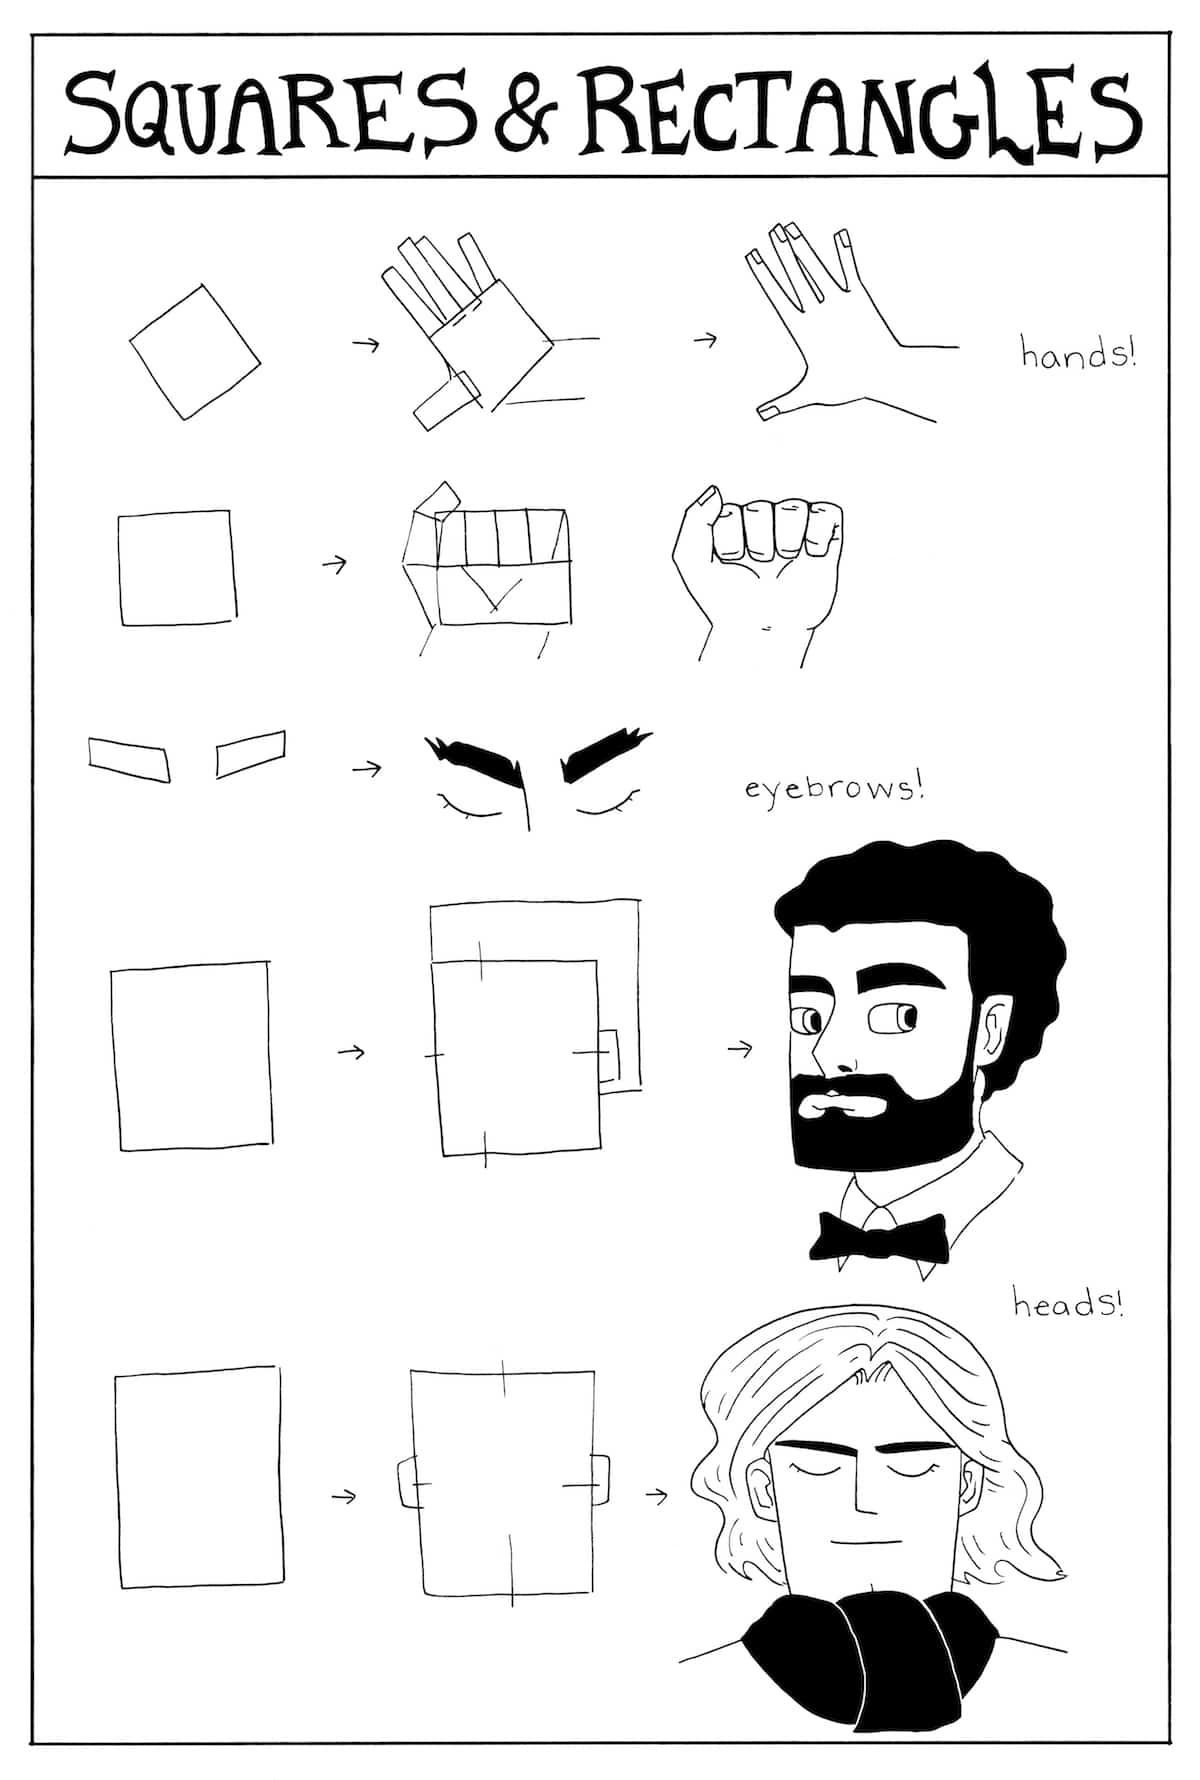 cómo dibujar personas y caricaturas con cuadrados